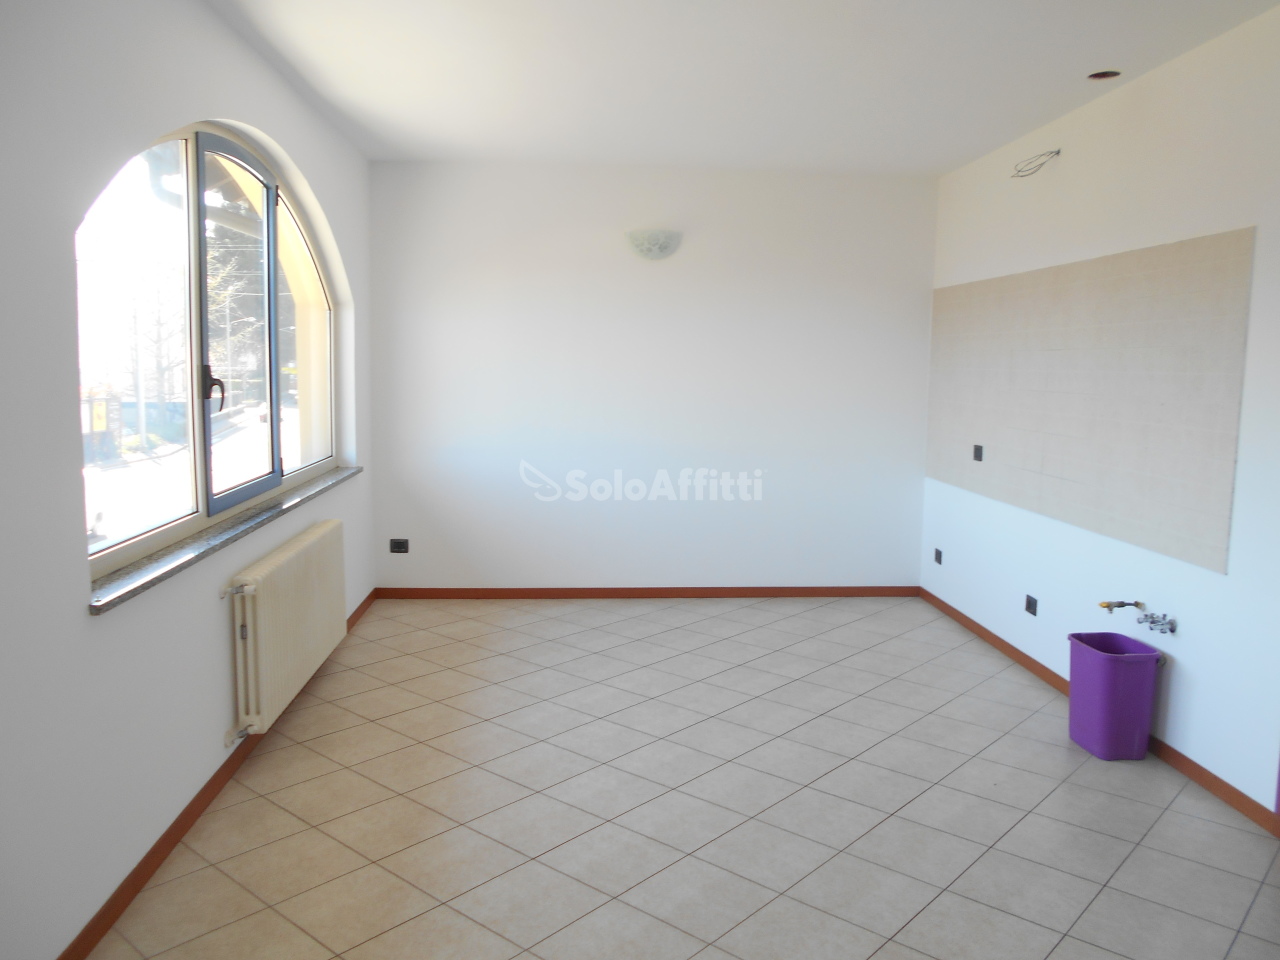 Appartamento in affitto a Fino Mornasco, 3 locali, prezzo € 650 | PortaleAgenzieImmobiliari.it